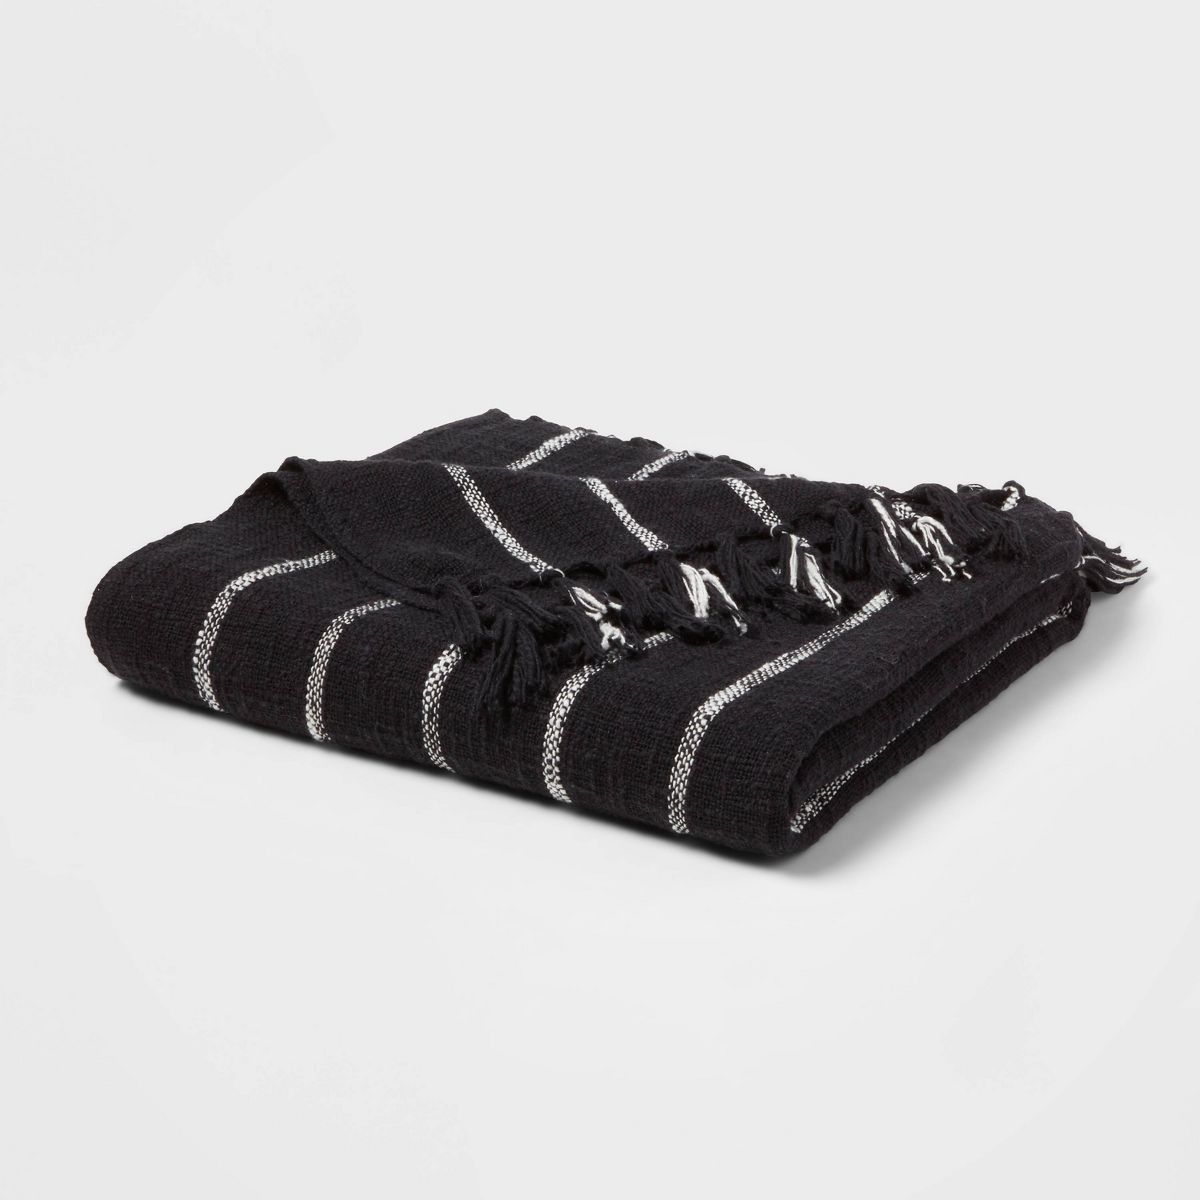 Fringed Oversized Throw Blanket Black Stripe - Threshold™ | Target